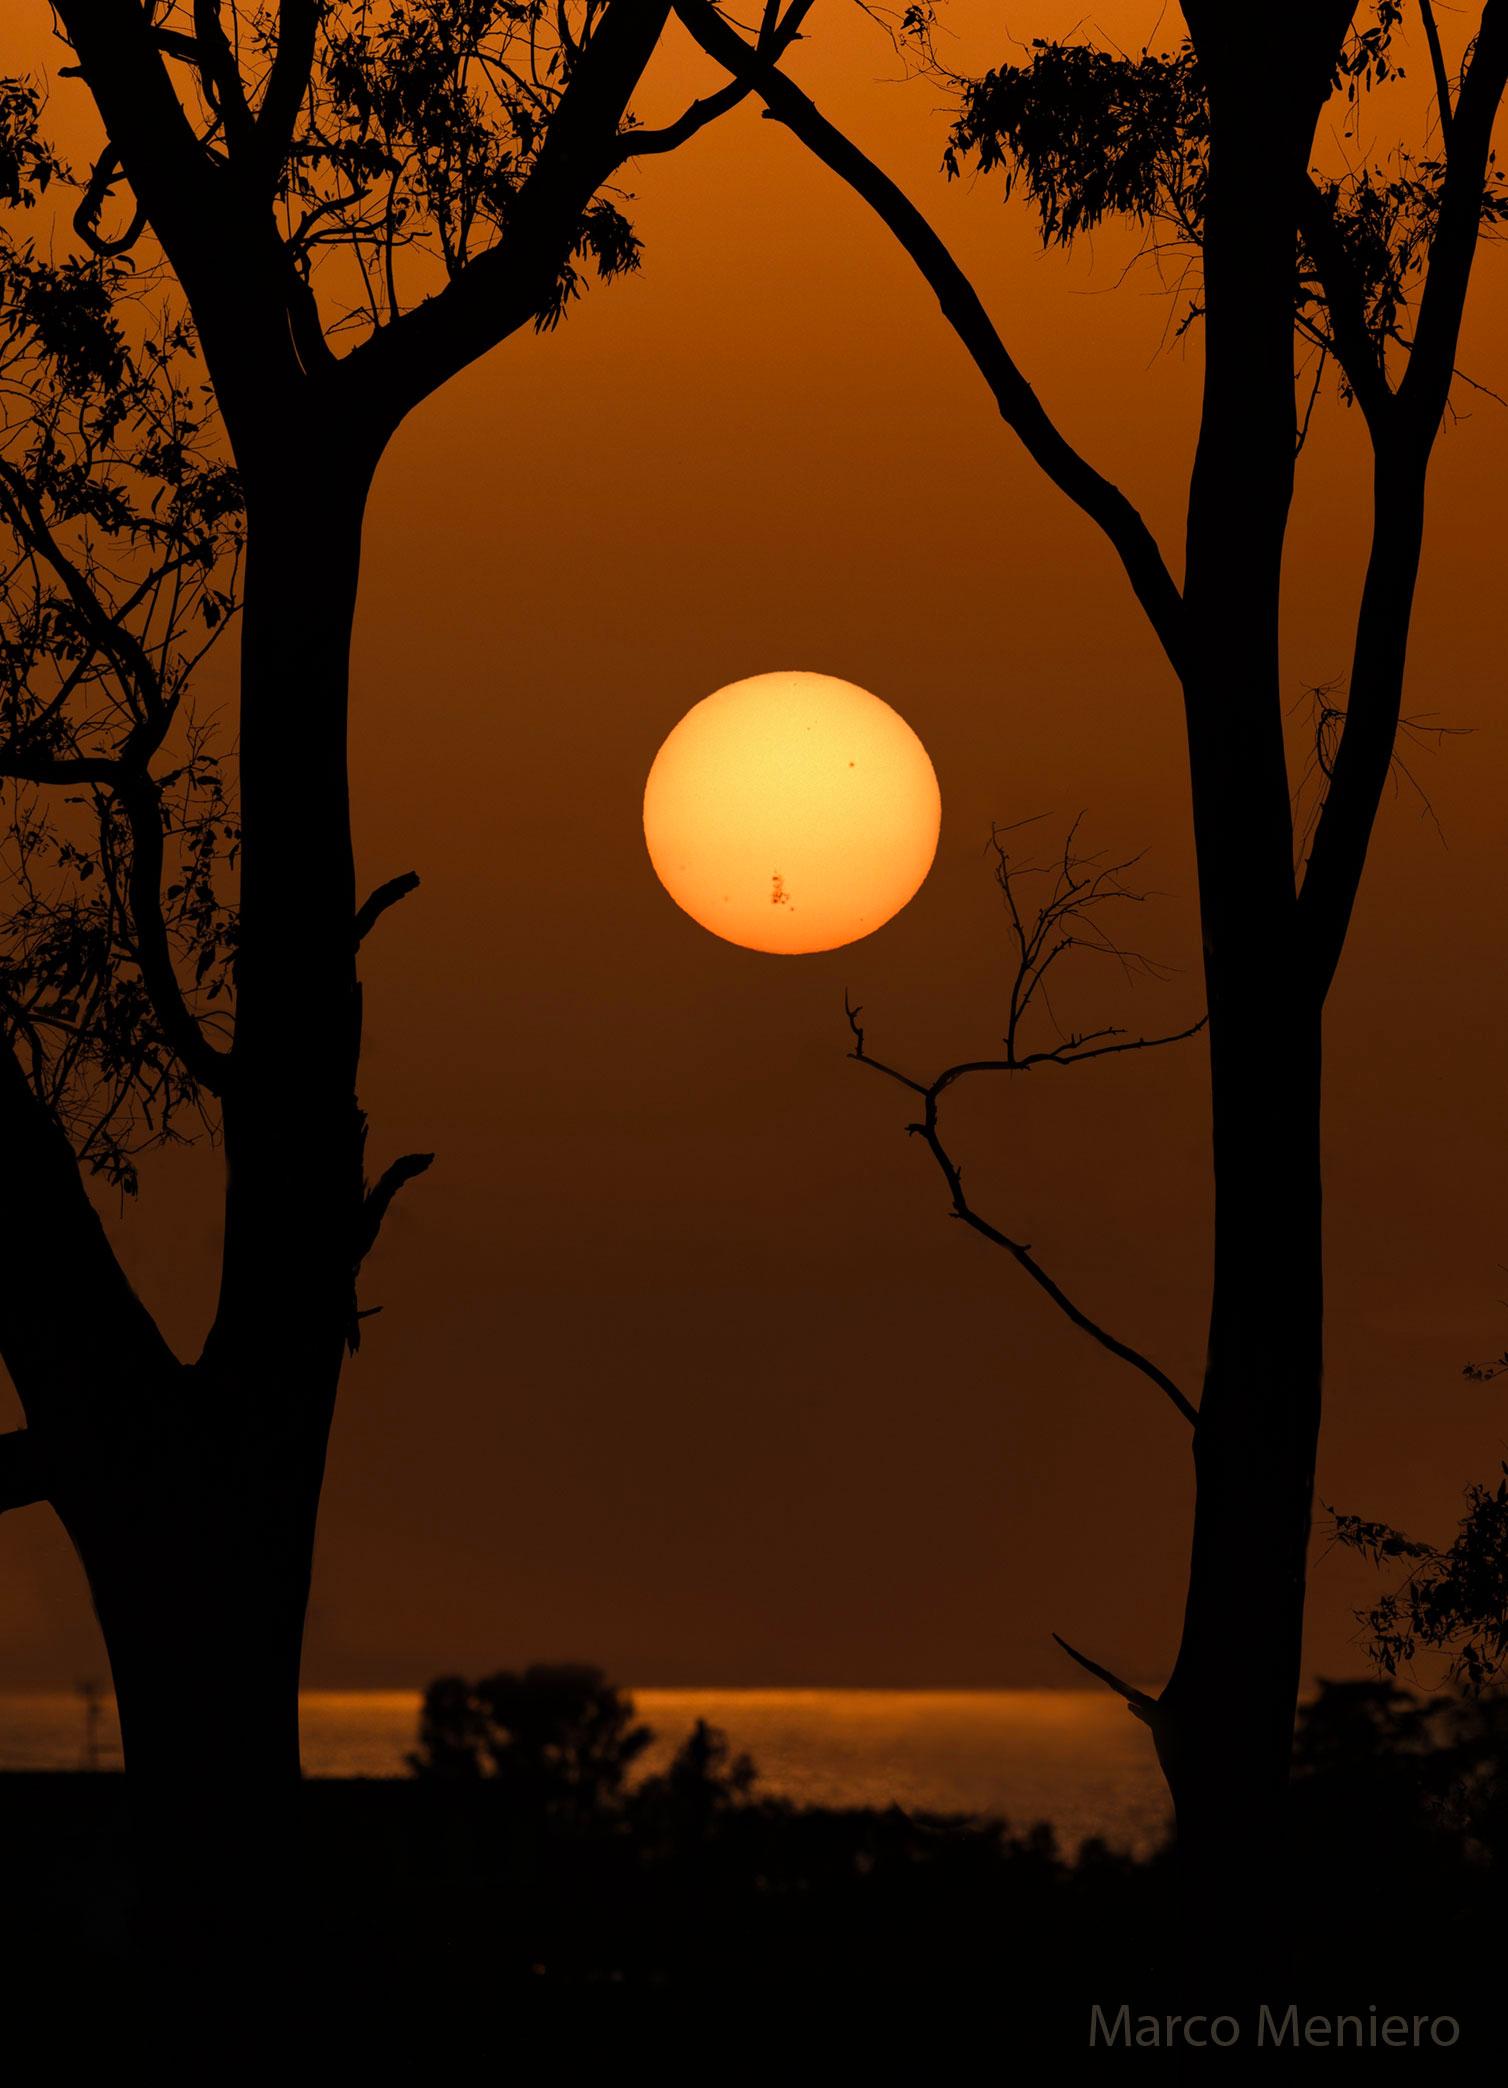 تُرى شمسٌ بعيدة فوق الماء وبين أشجار المُقدِّمة. توجد على الجزء السُفليّ من الشمس المنطقة النَّشِطة الضَّخمة AR 3664 مرئيَّة بواسطة بقعها الشمسيّة الداكِنة.